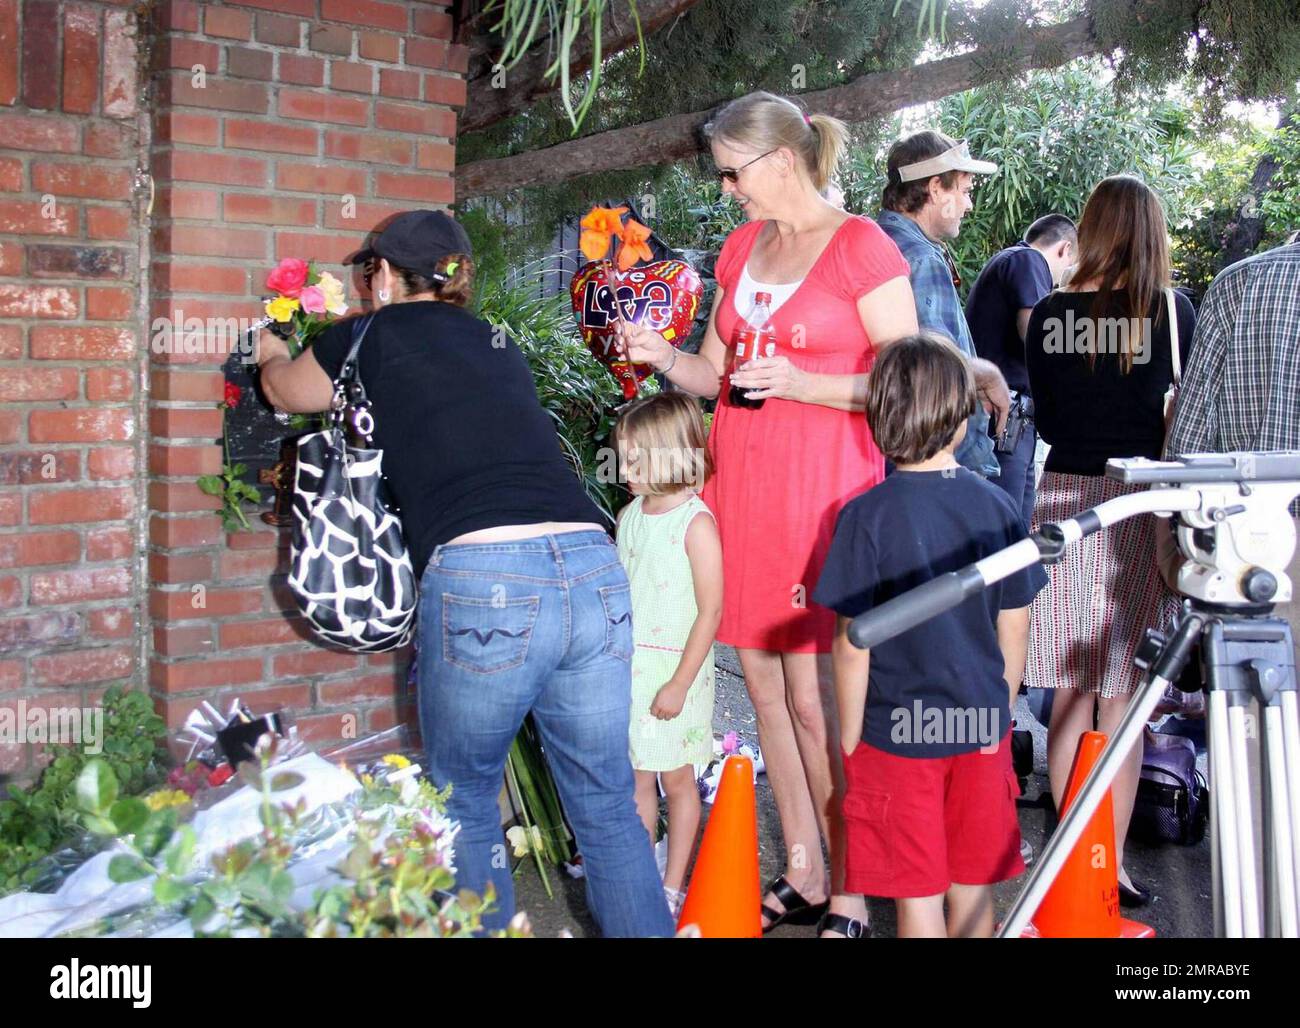 Les fans et les amis se rassemblent à l'extérieur du complexe familial de Jackson pour laisser des fleurs et des cadeaux et rendre hommage à la famille qui arrive du centre médical d'UCLA où Michael Jackson a été déclaré mort après avoir subi un arrêt cardiaque cet après-midi. Encino, Californie 6/25/09. Banque D'Images